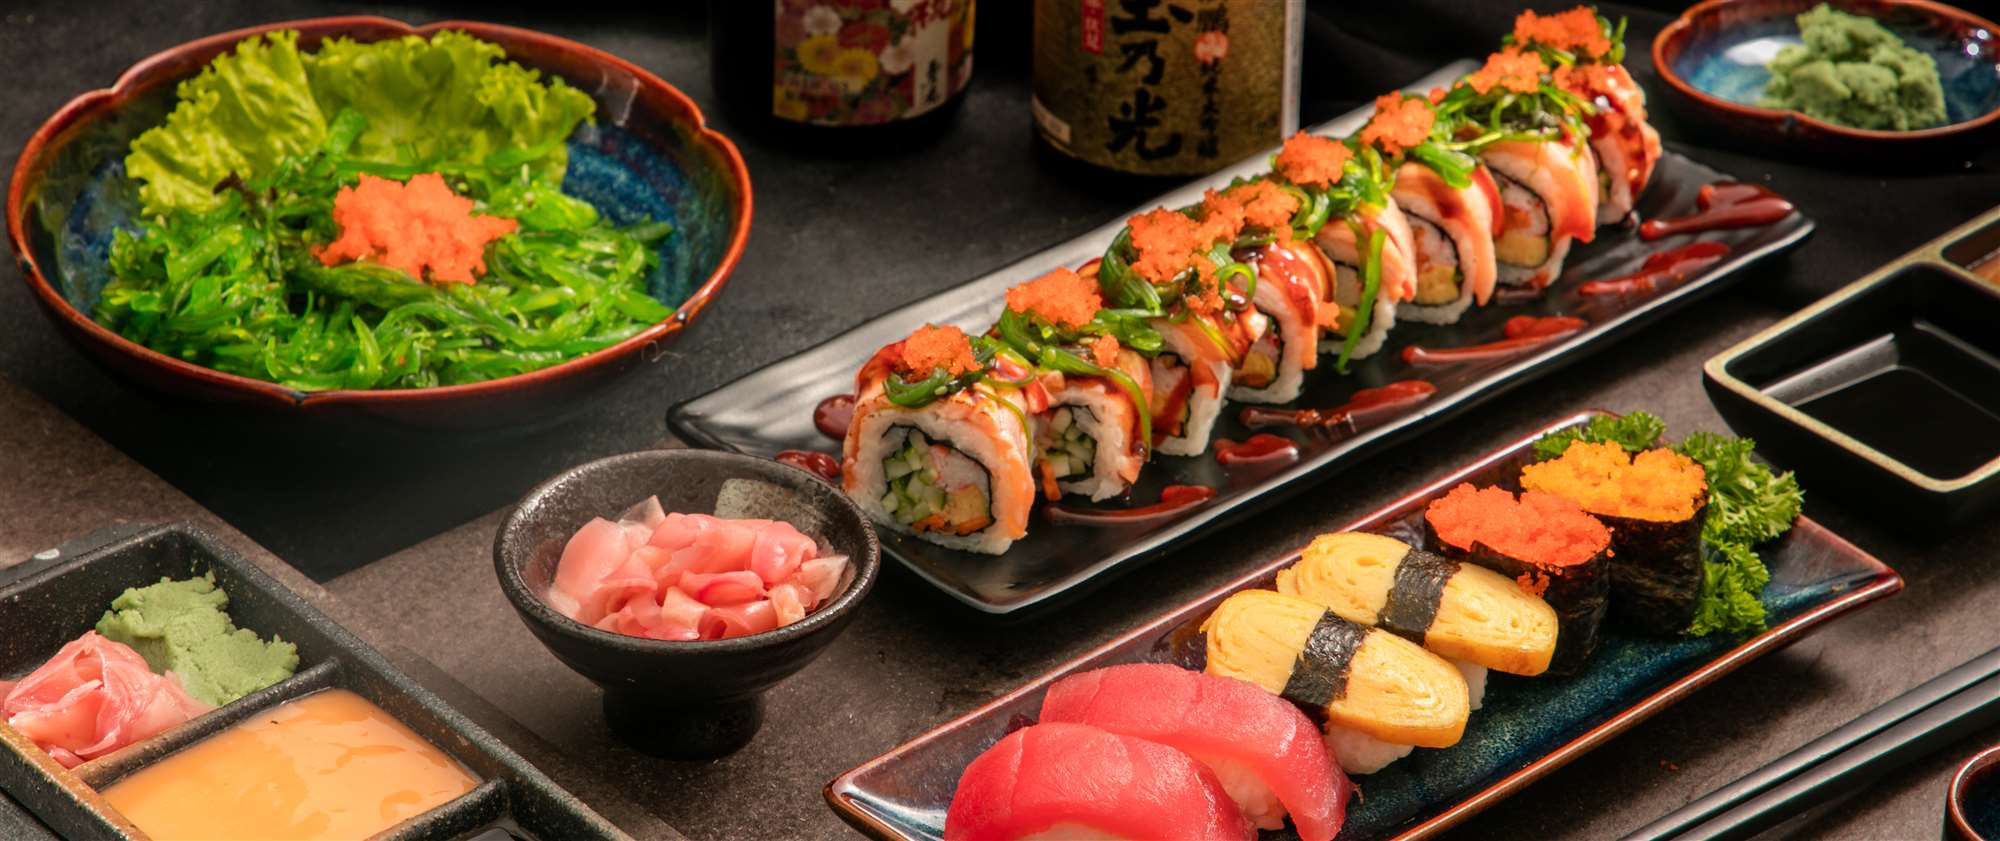 Shinbashi - Quán sushi ngon ở Hà Nội chất lượng